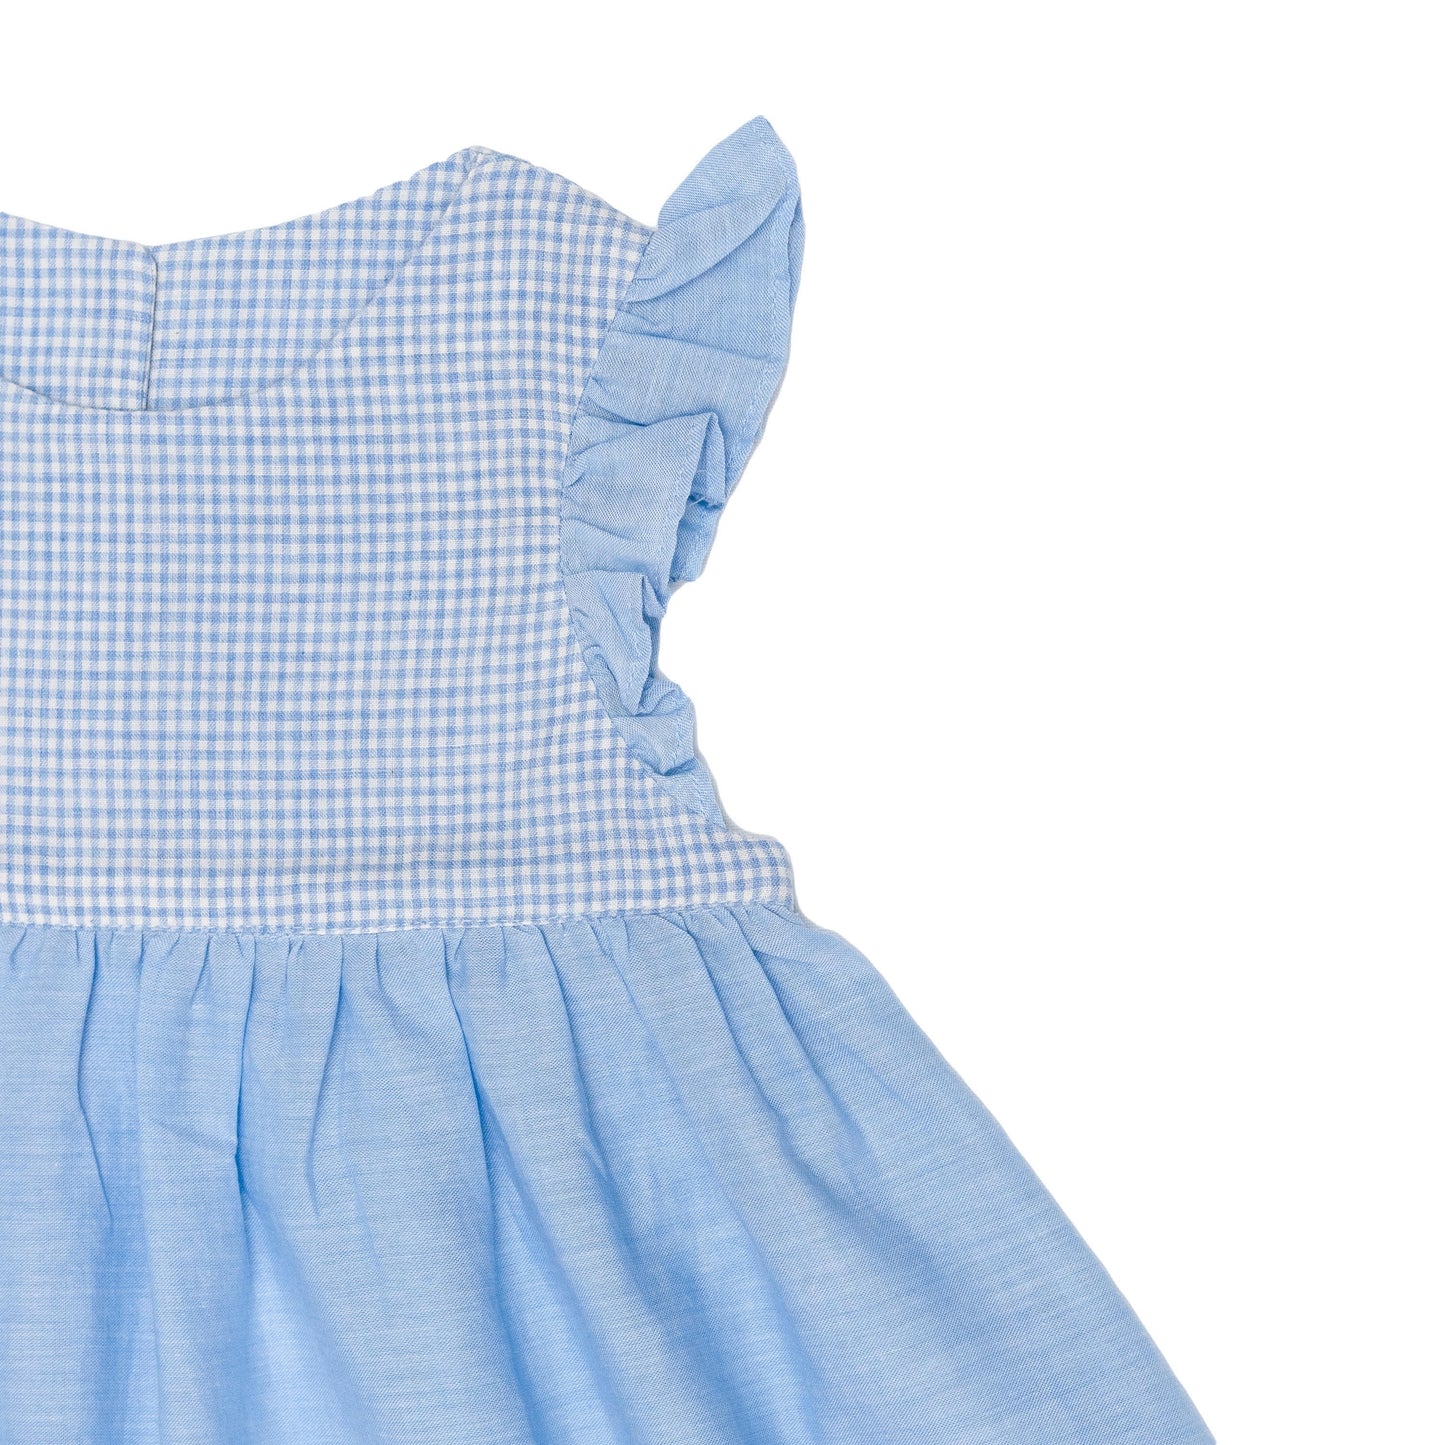 Flutter Dress – Baby Blue